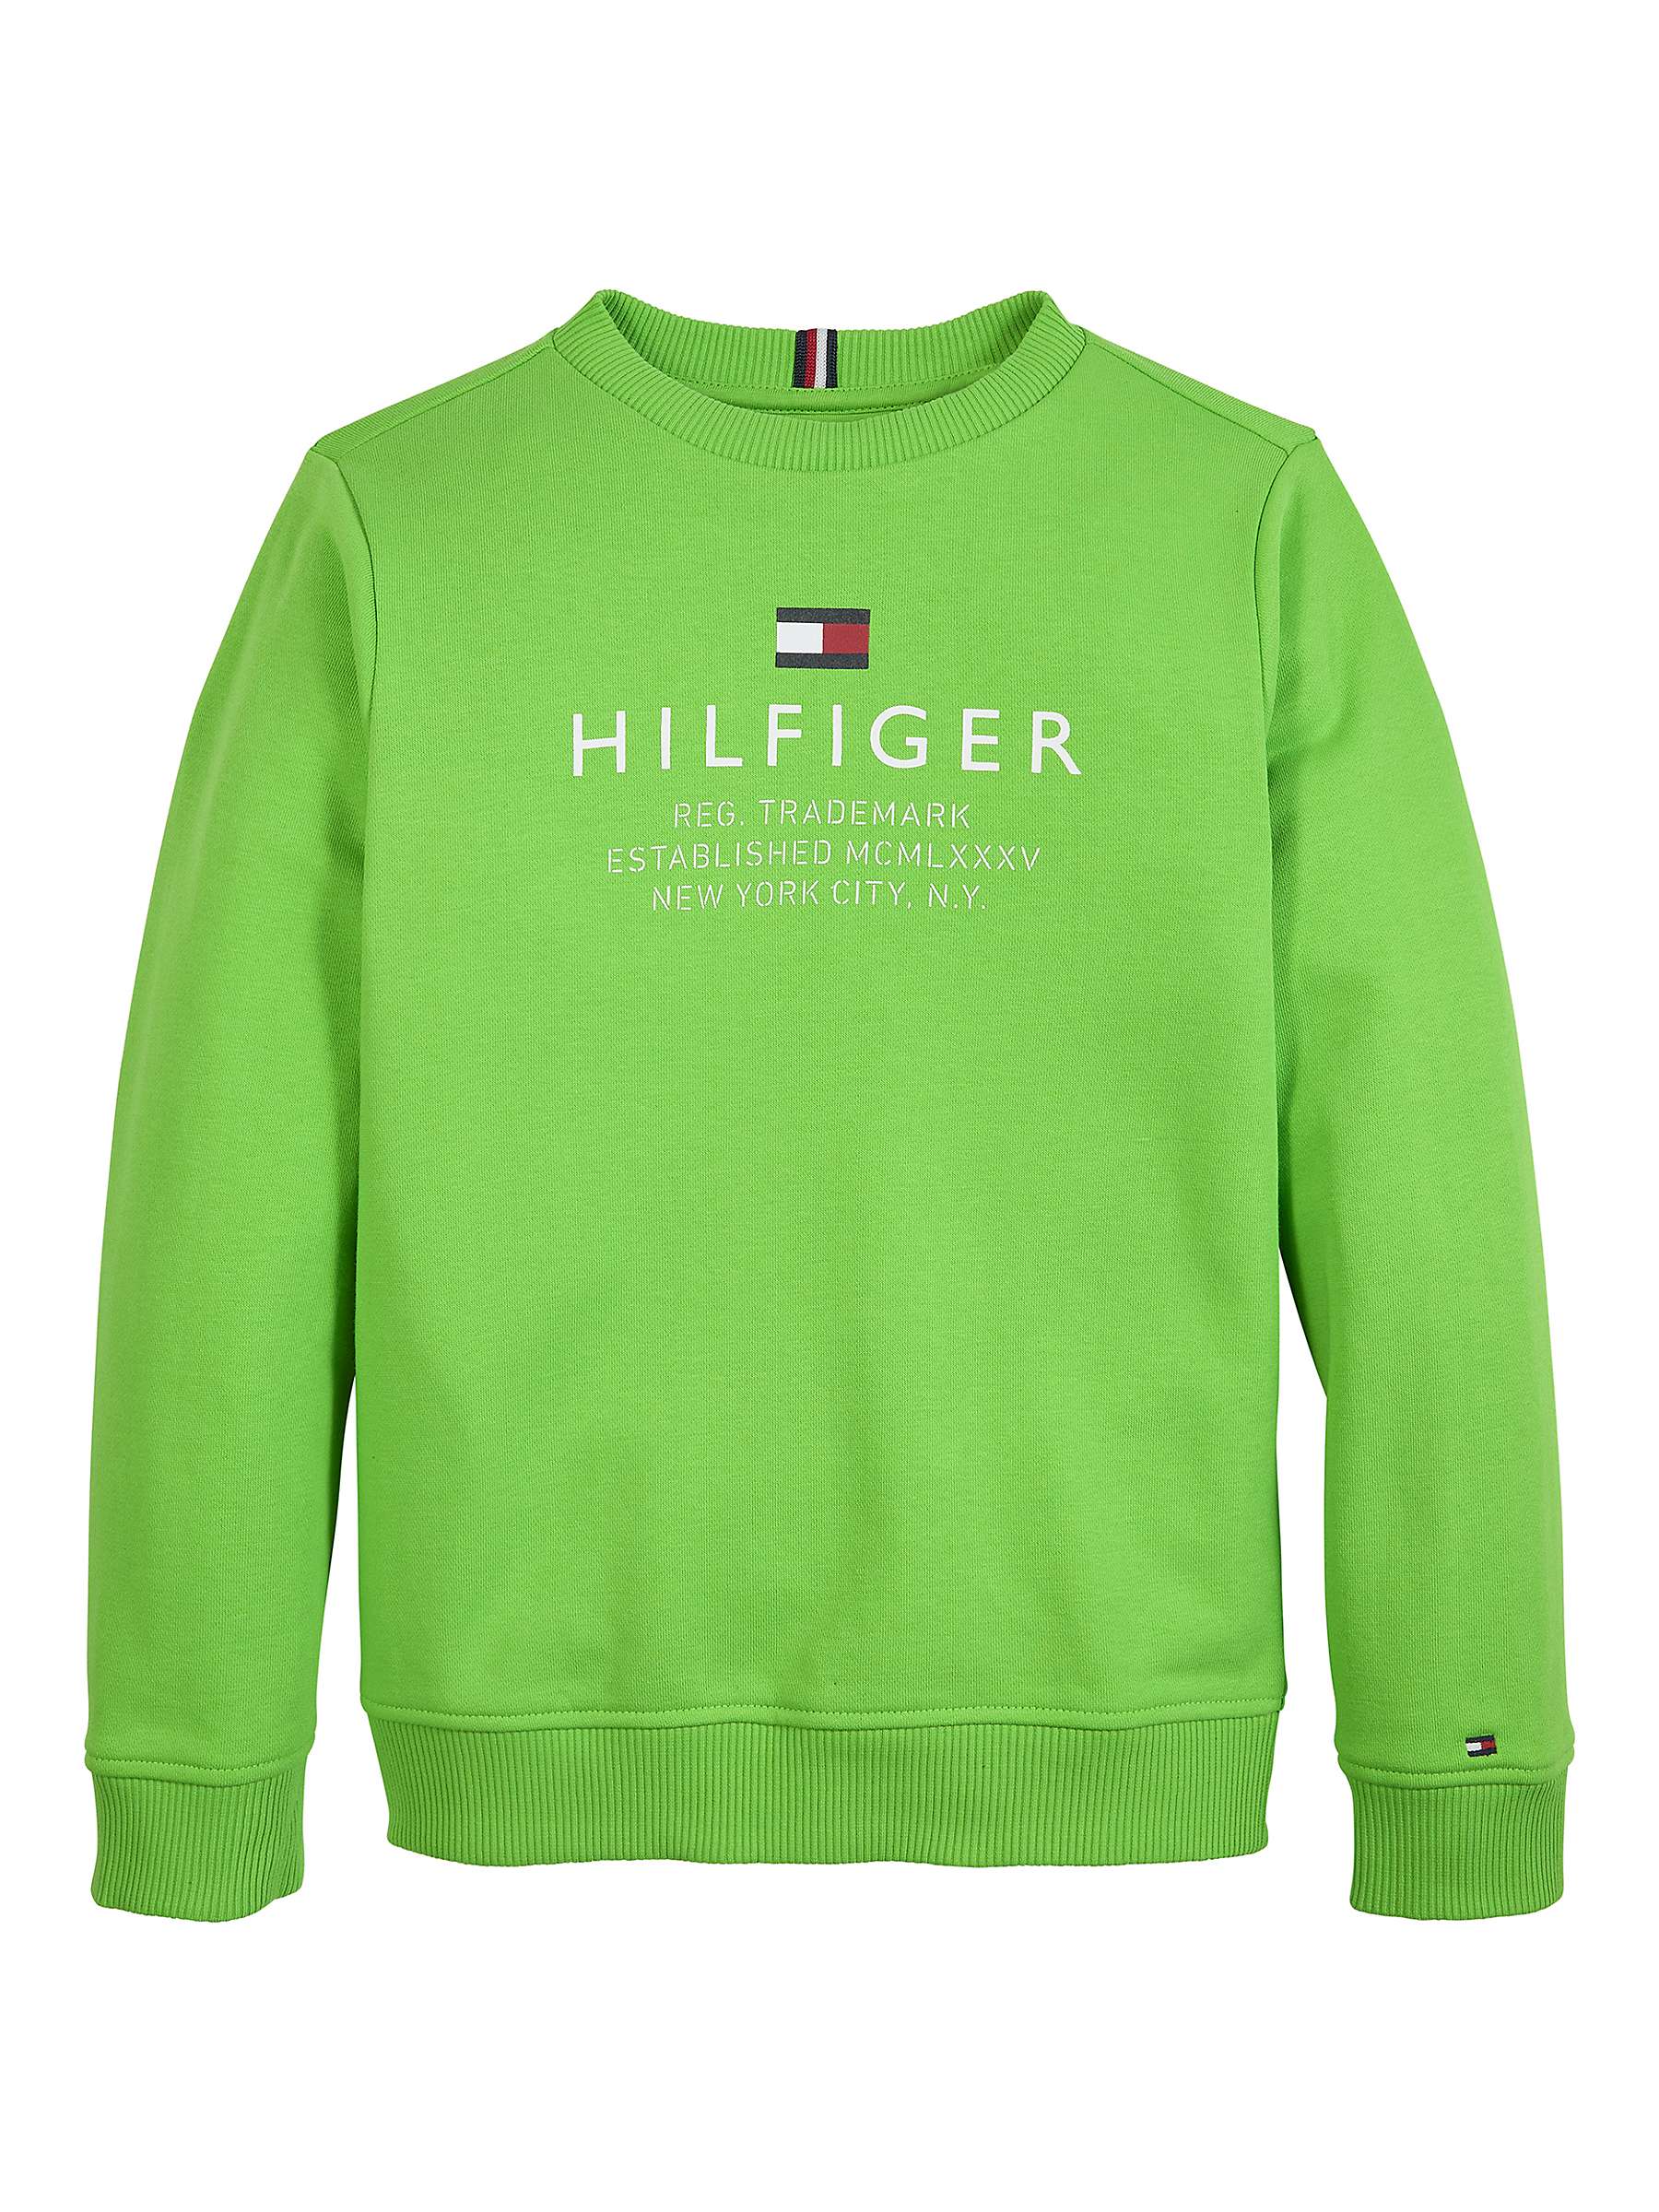 Buy Tommy Hilfiger Kids' Cotton Blend Logo Sweatshirt, Spring Lime Online at johnlewis.com